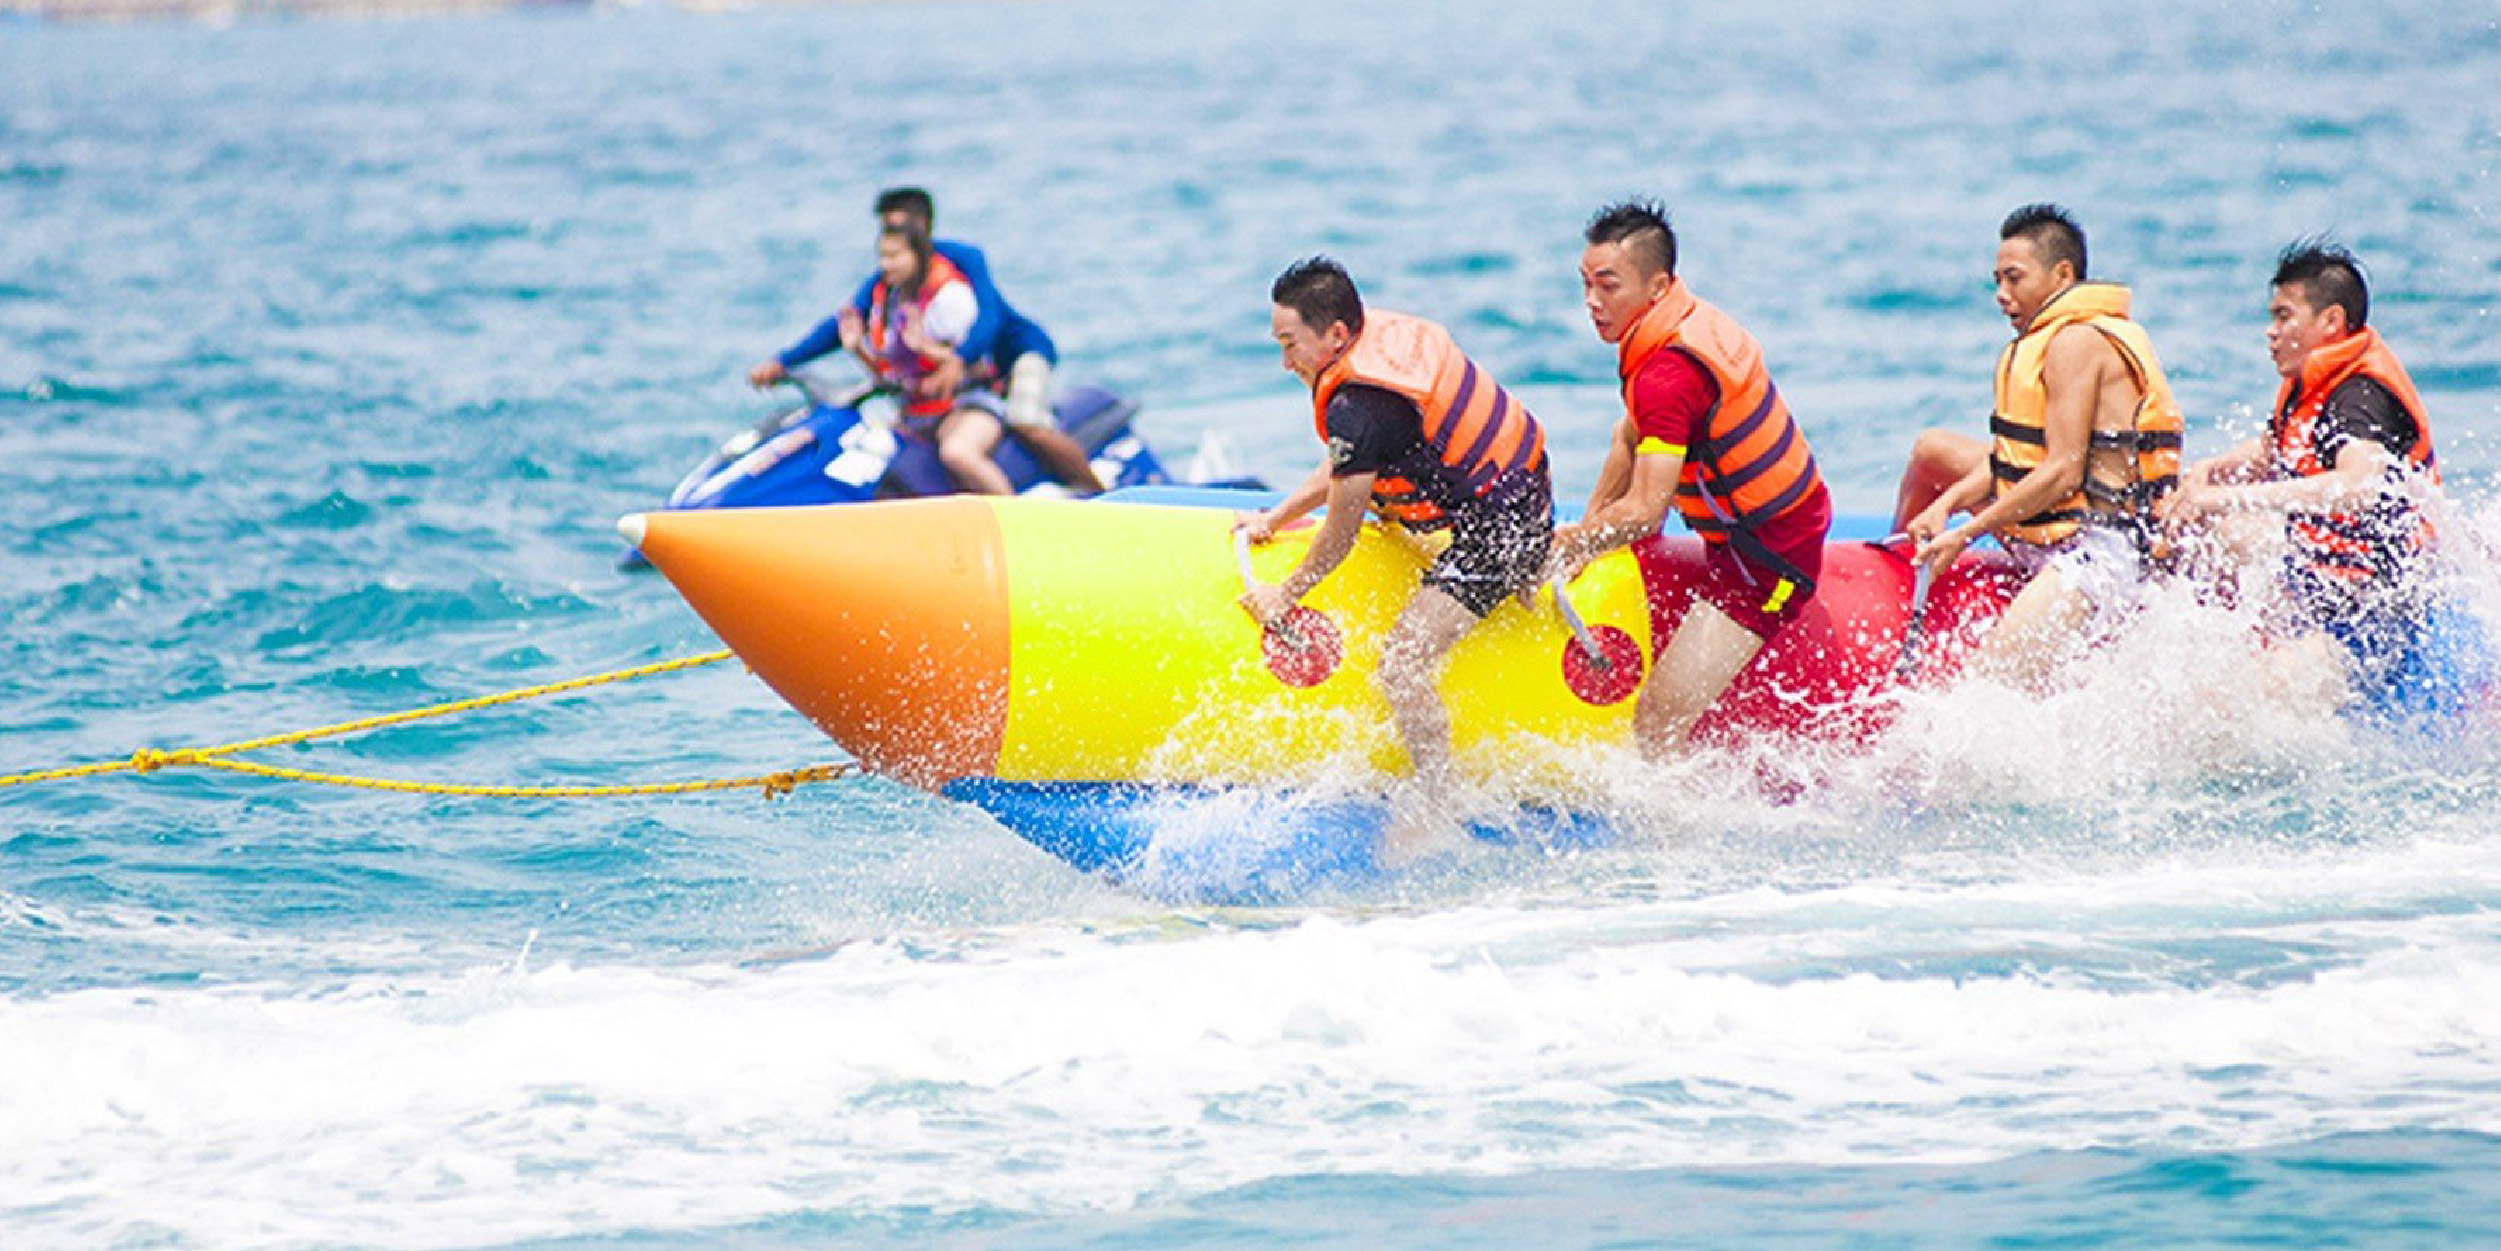 Charm Group mở siêu lễ hội biển hoành tráng tại Hồ Tràm dịp lễ 30/4